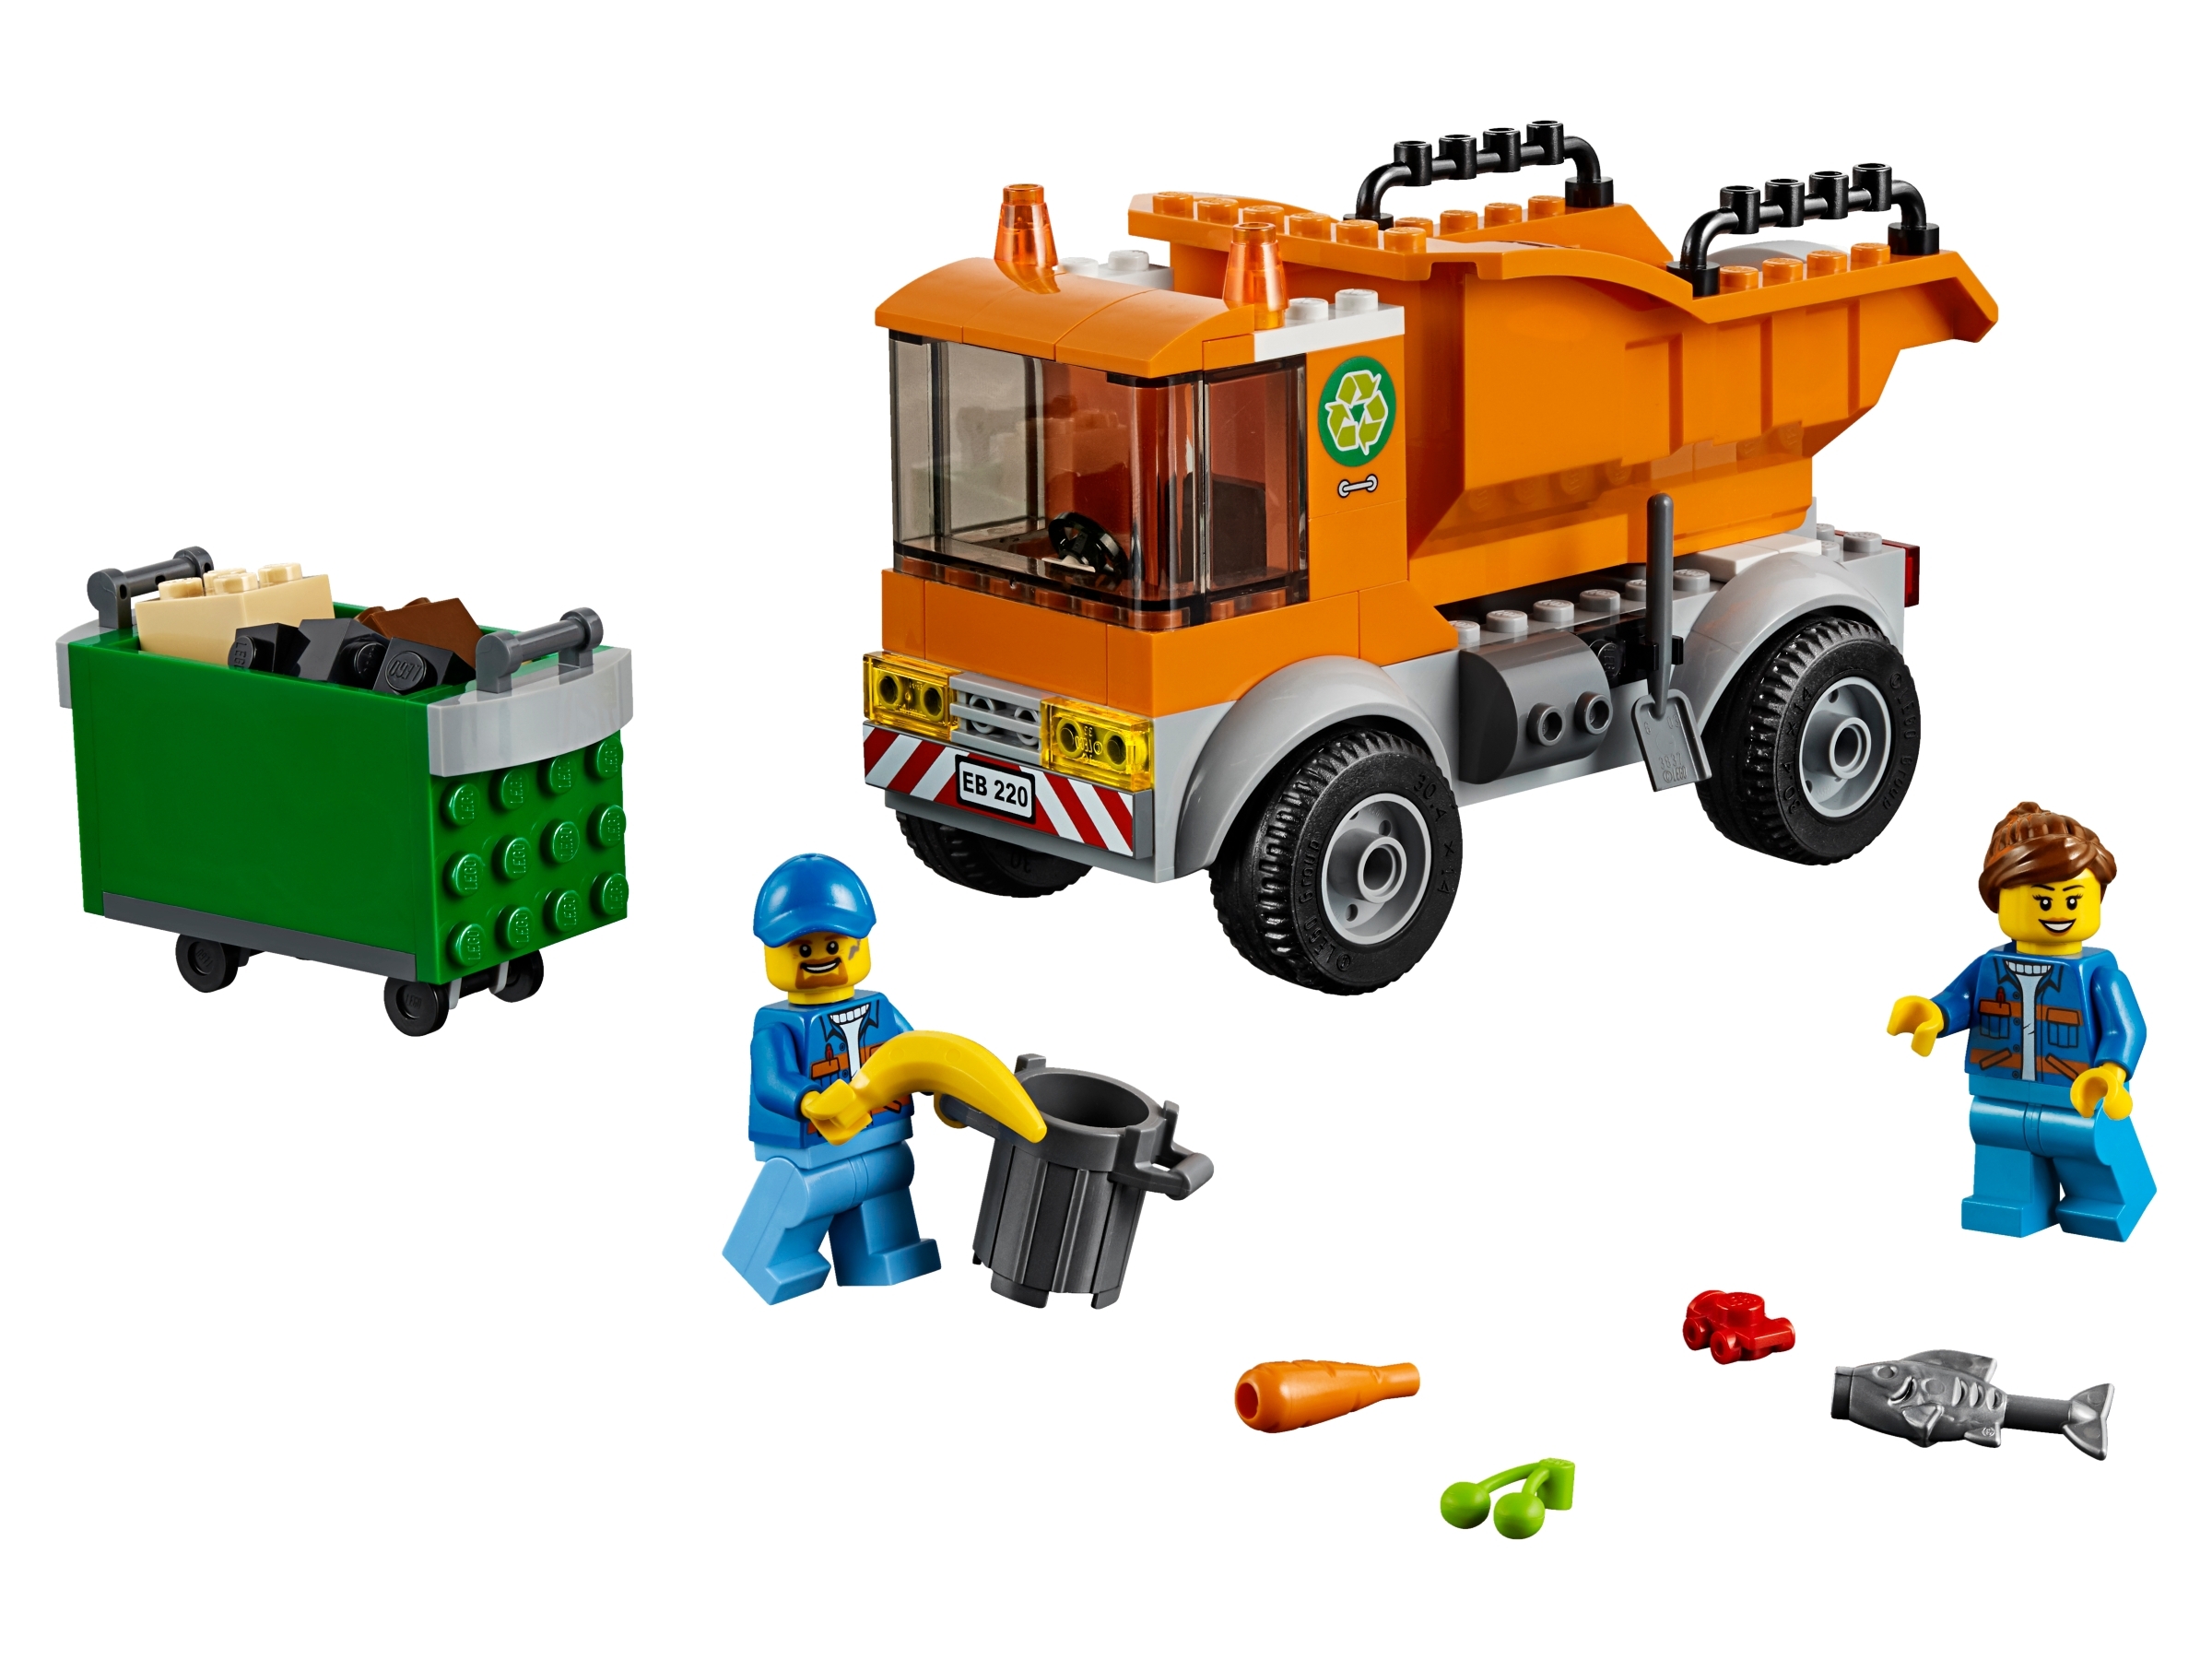 Slang blik Noord West Garbage Truck 60220 | City | Buy online at the Official LEGO® Shop US